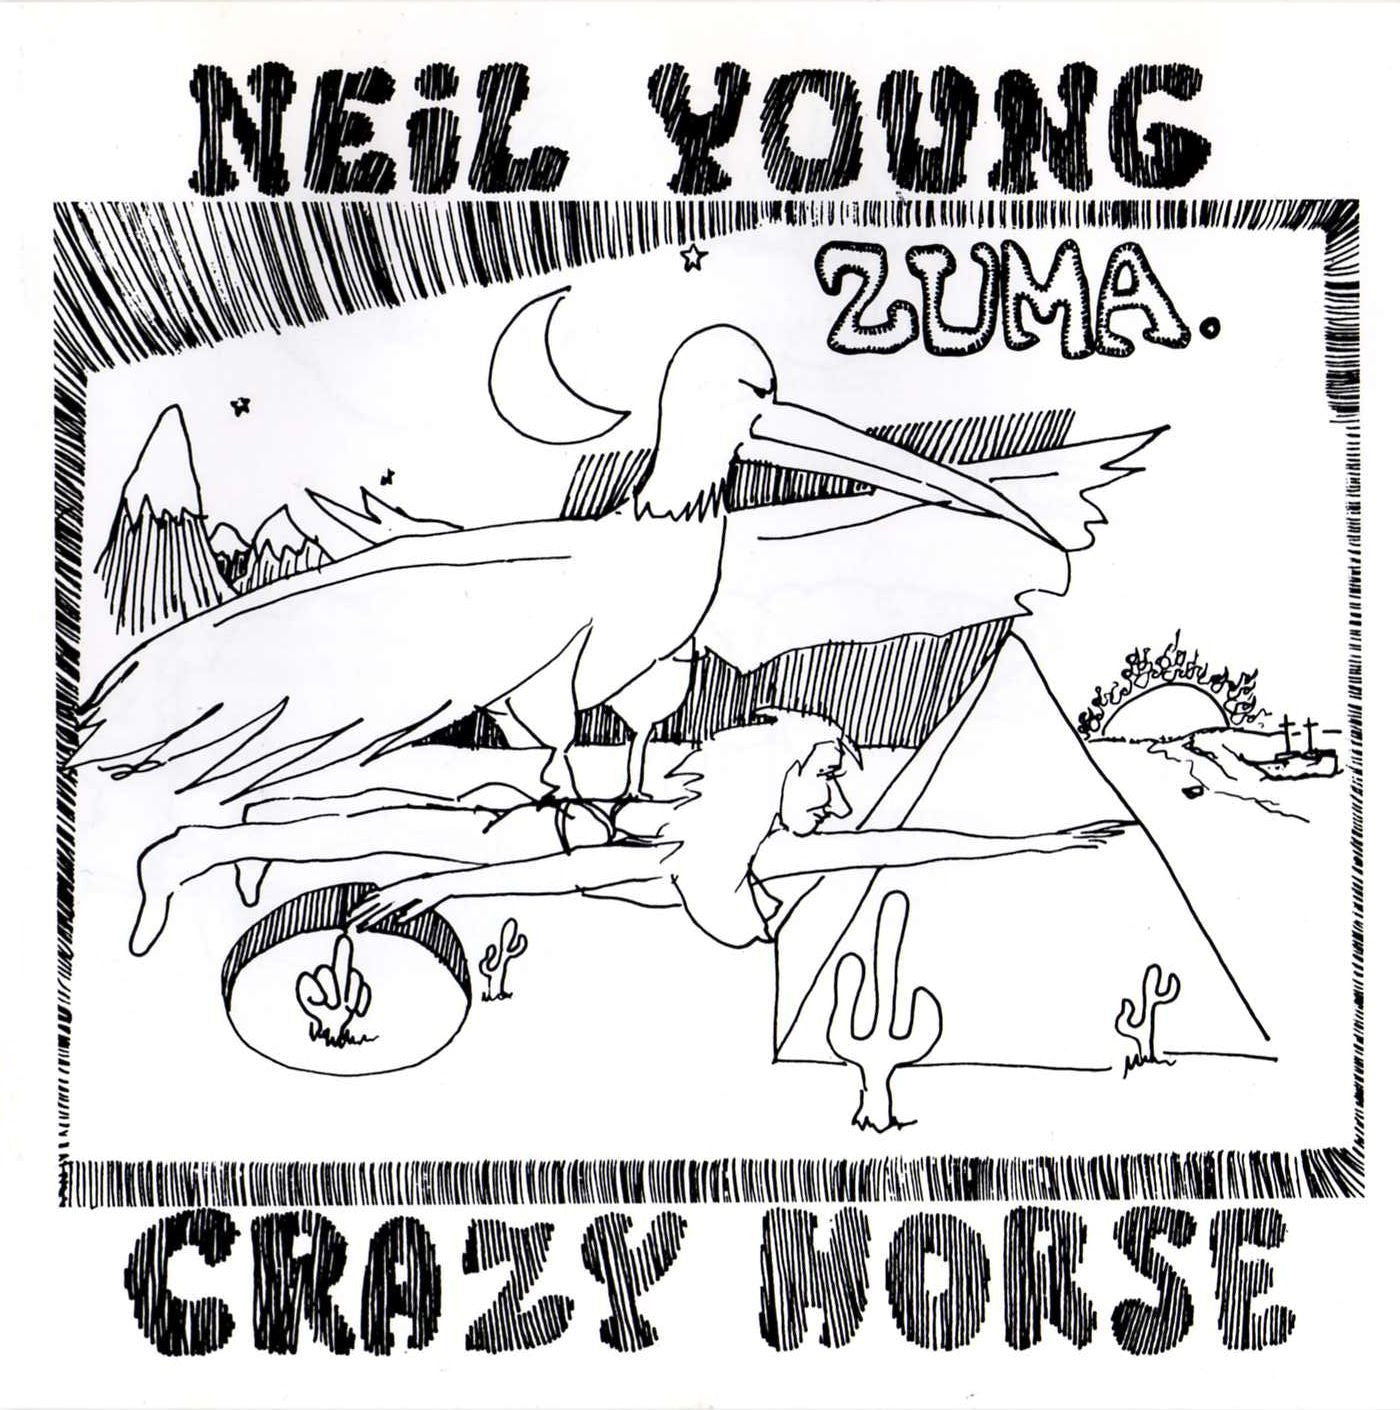 Neil Young - Zuma LP